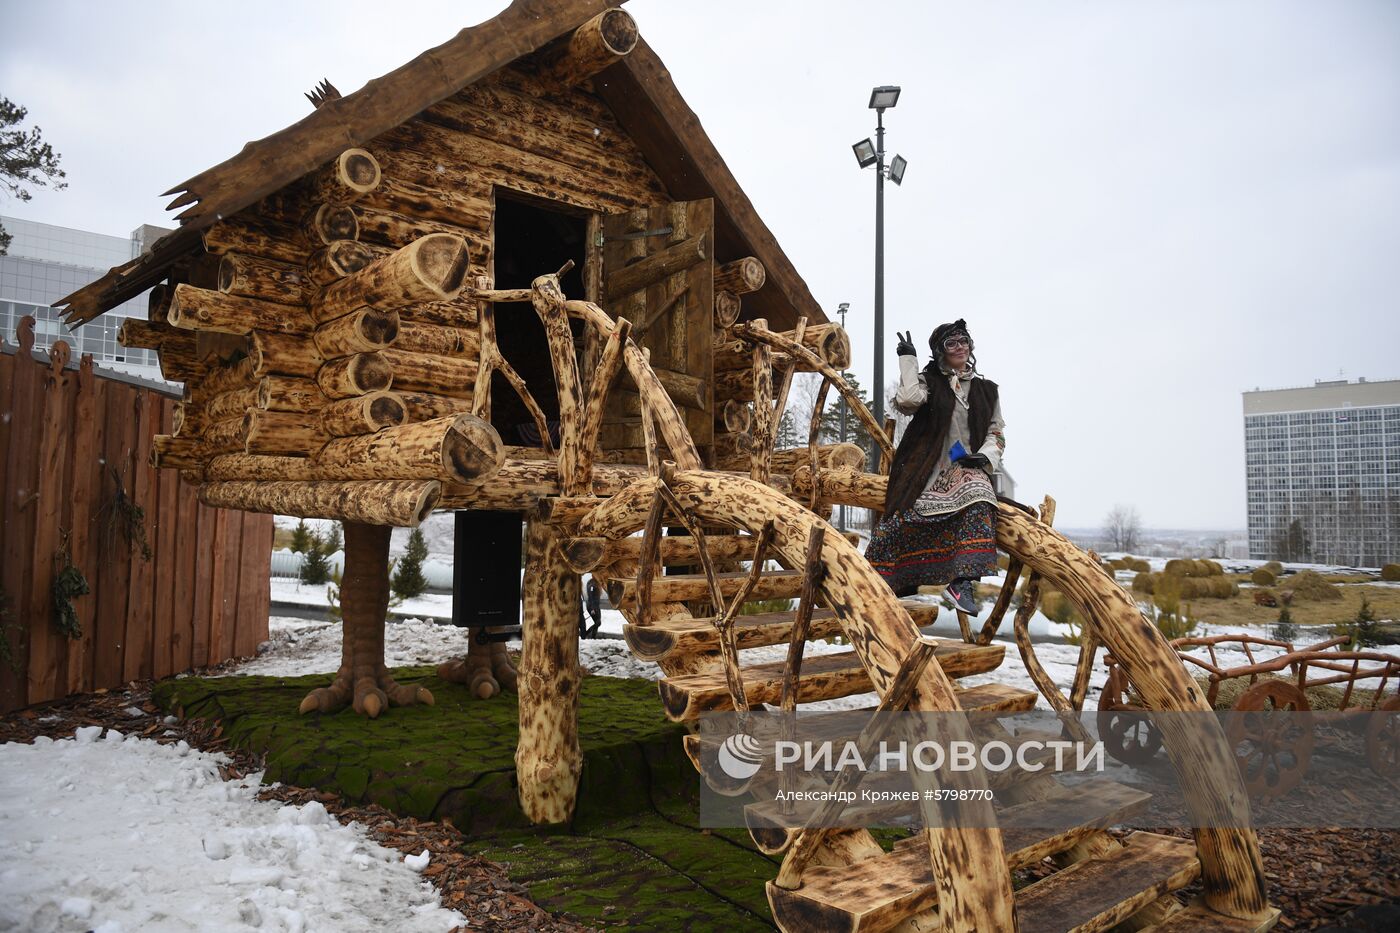 Деревня Универсиады-2019 в Красноярске